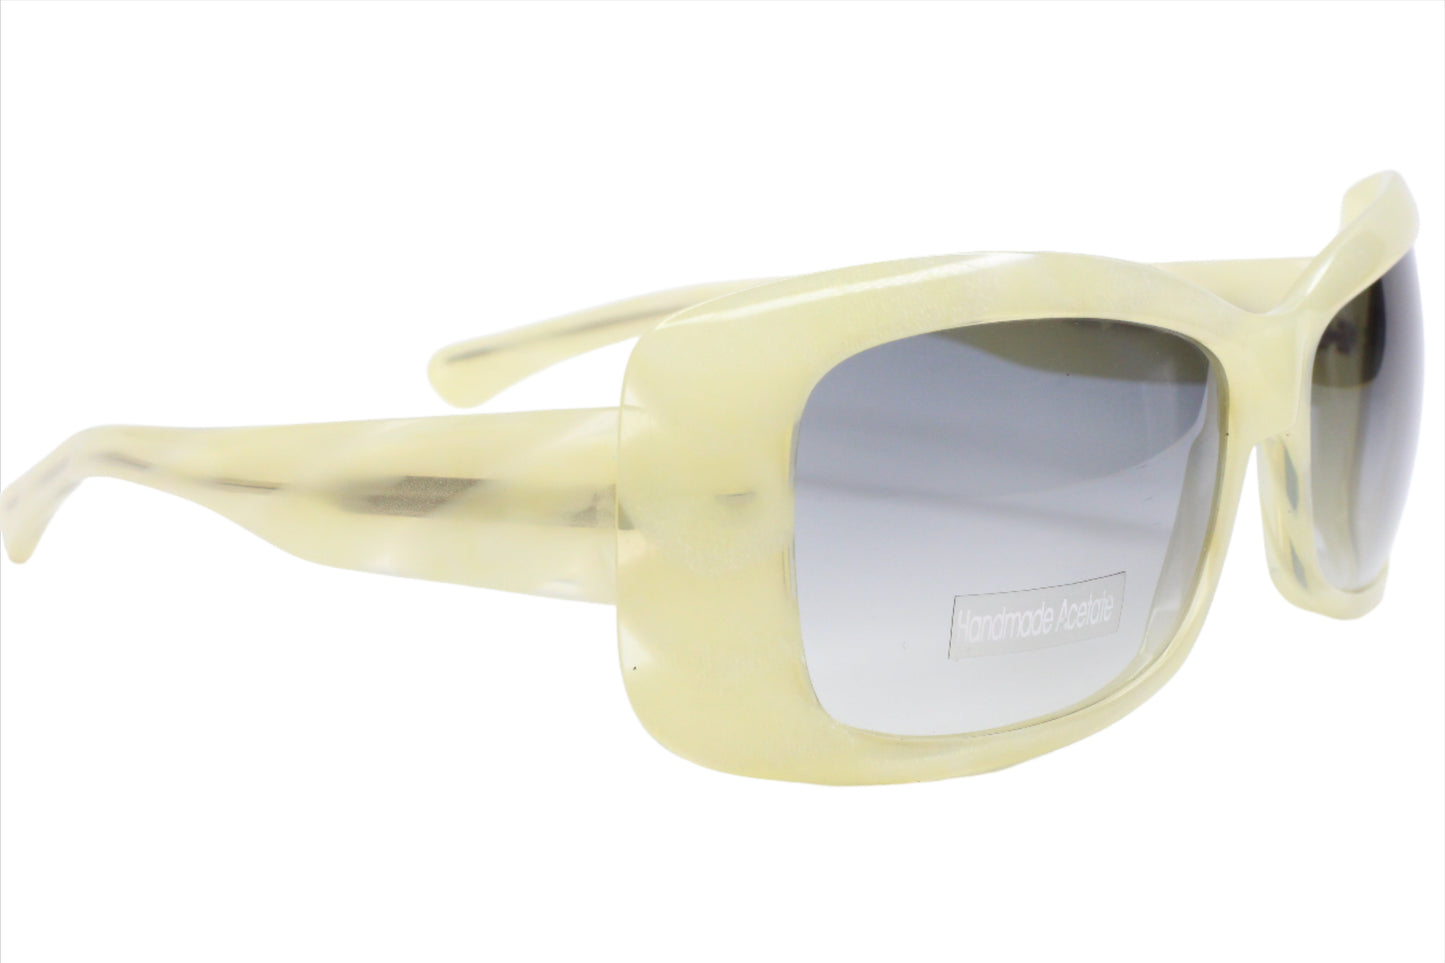 Mirella Mori M203155S 091 Beige Design Acetate Italy Sunglasses